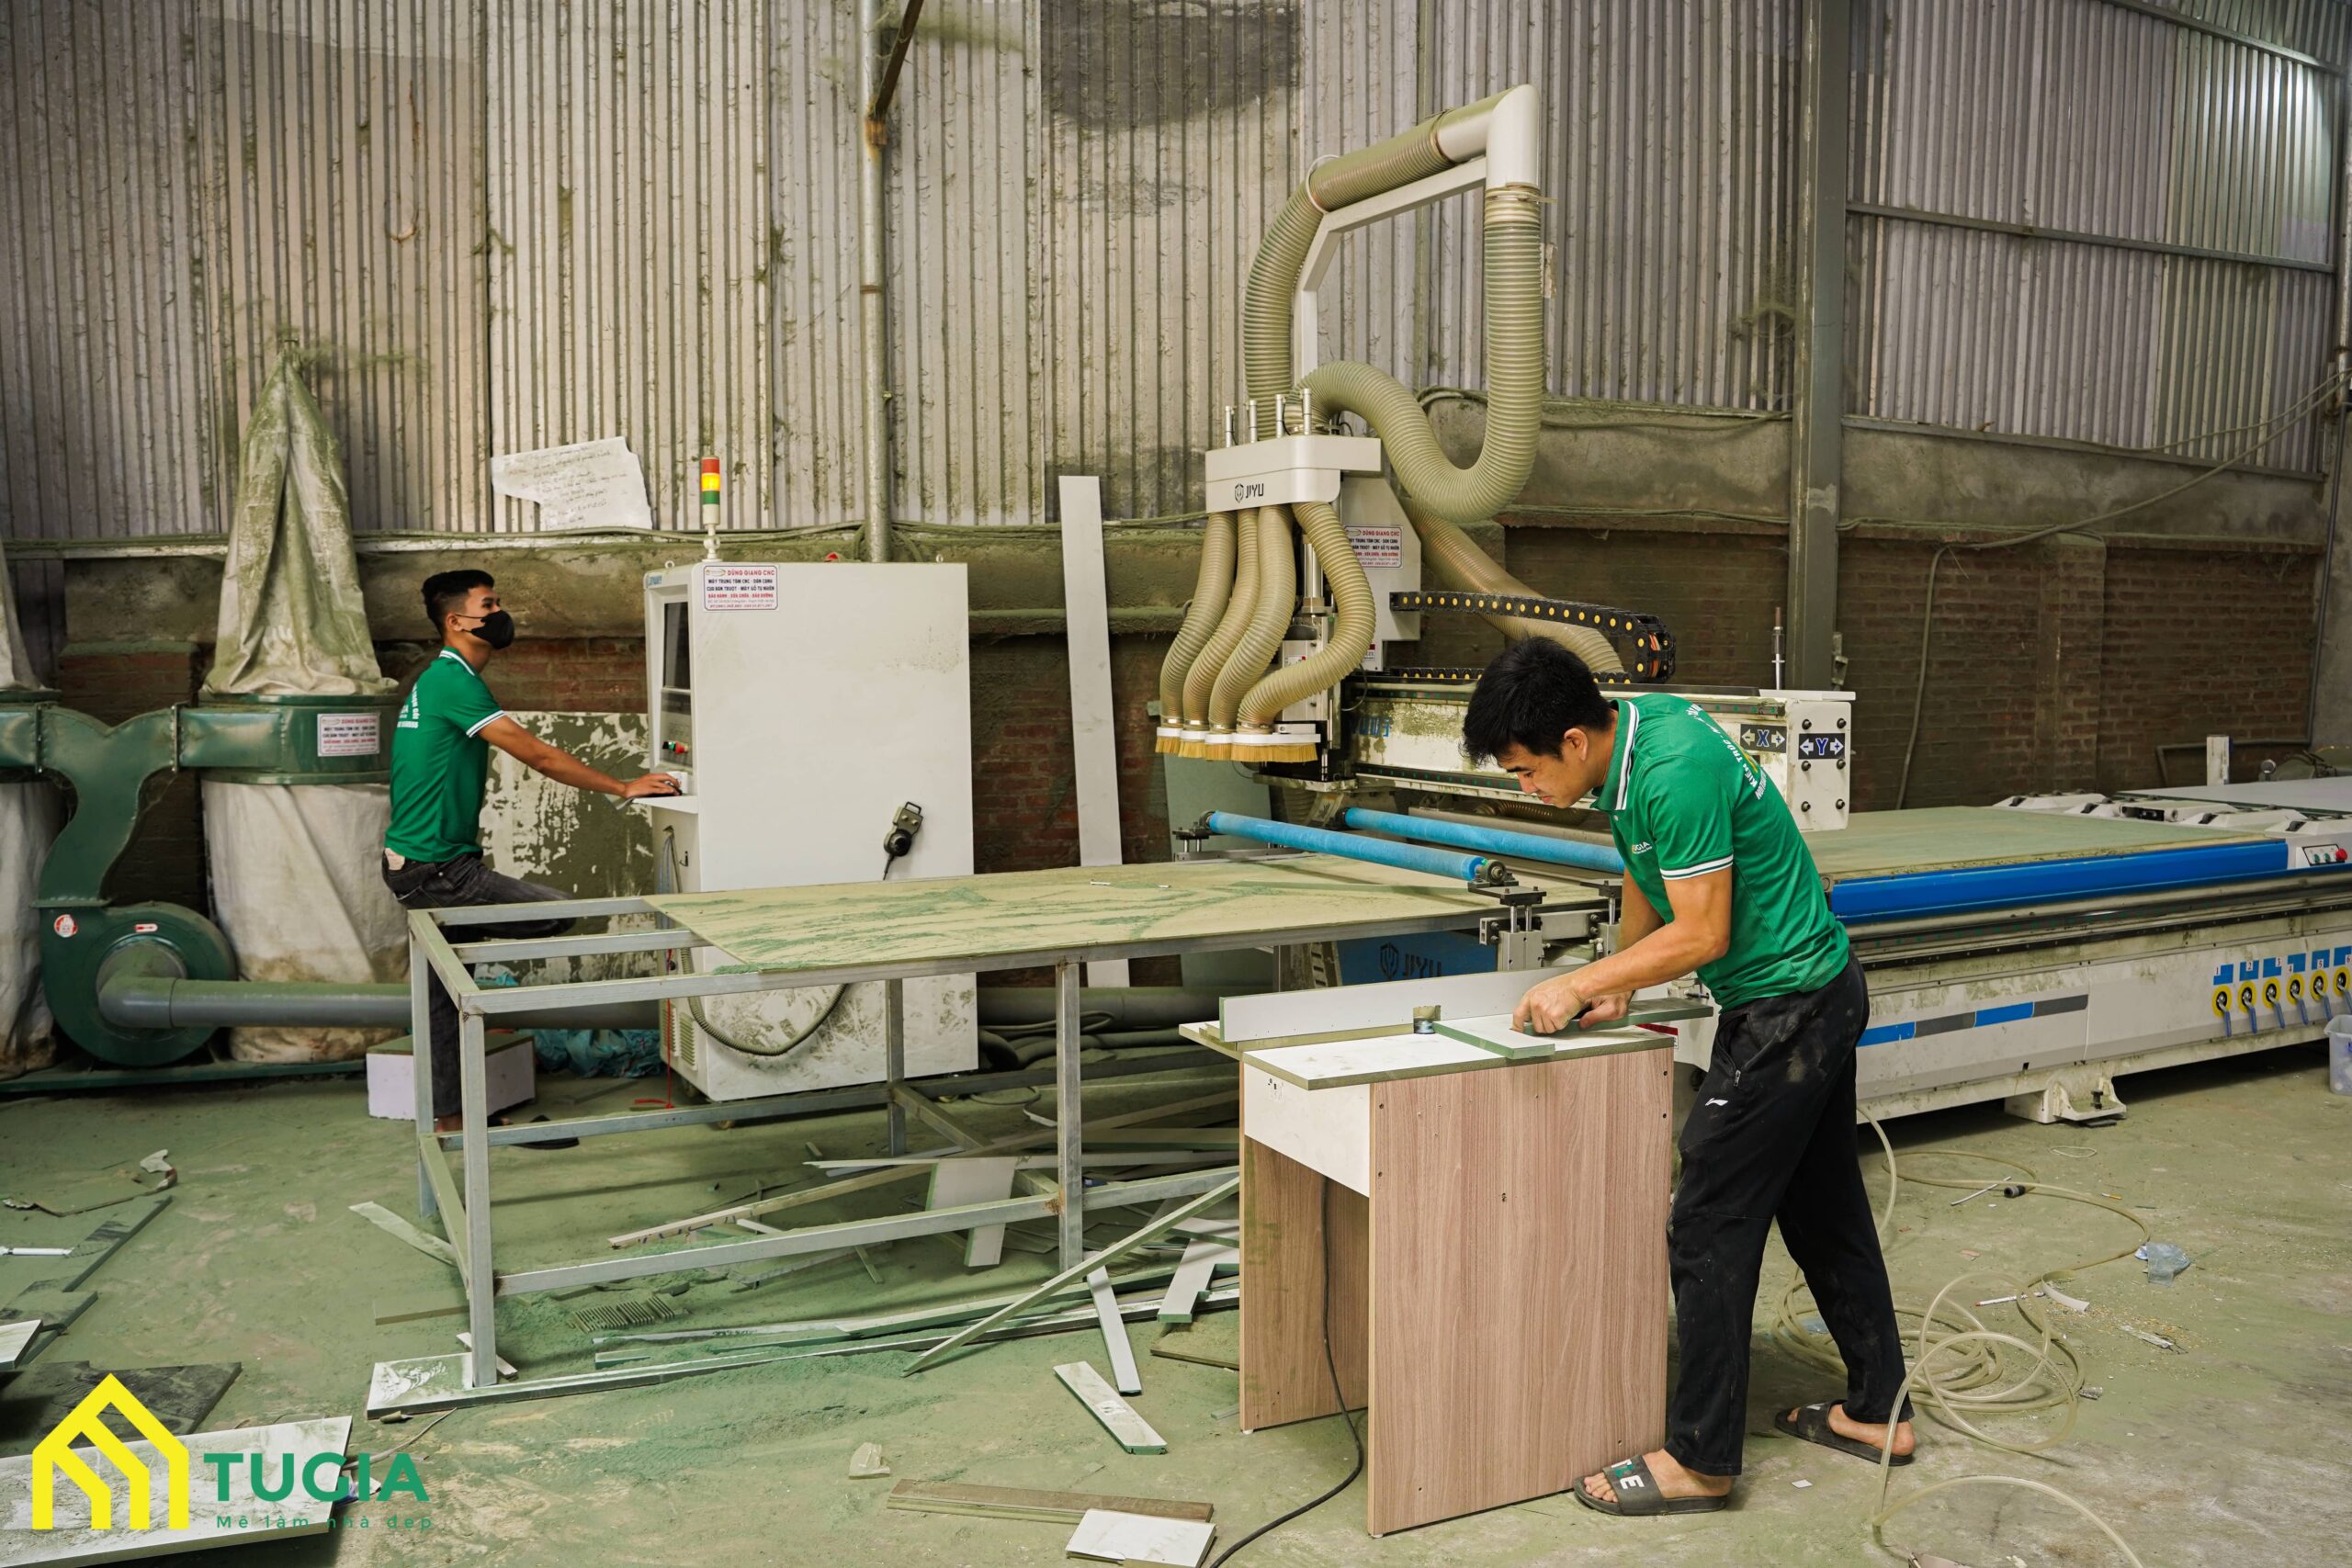 Quy trình sản xuất nội thất gỗ công nghiệp theo yêu cầu sử dụng máy móc hiện đại